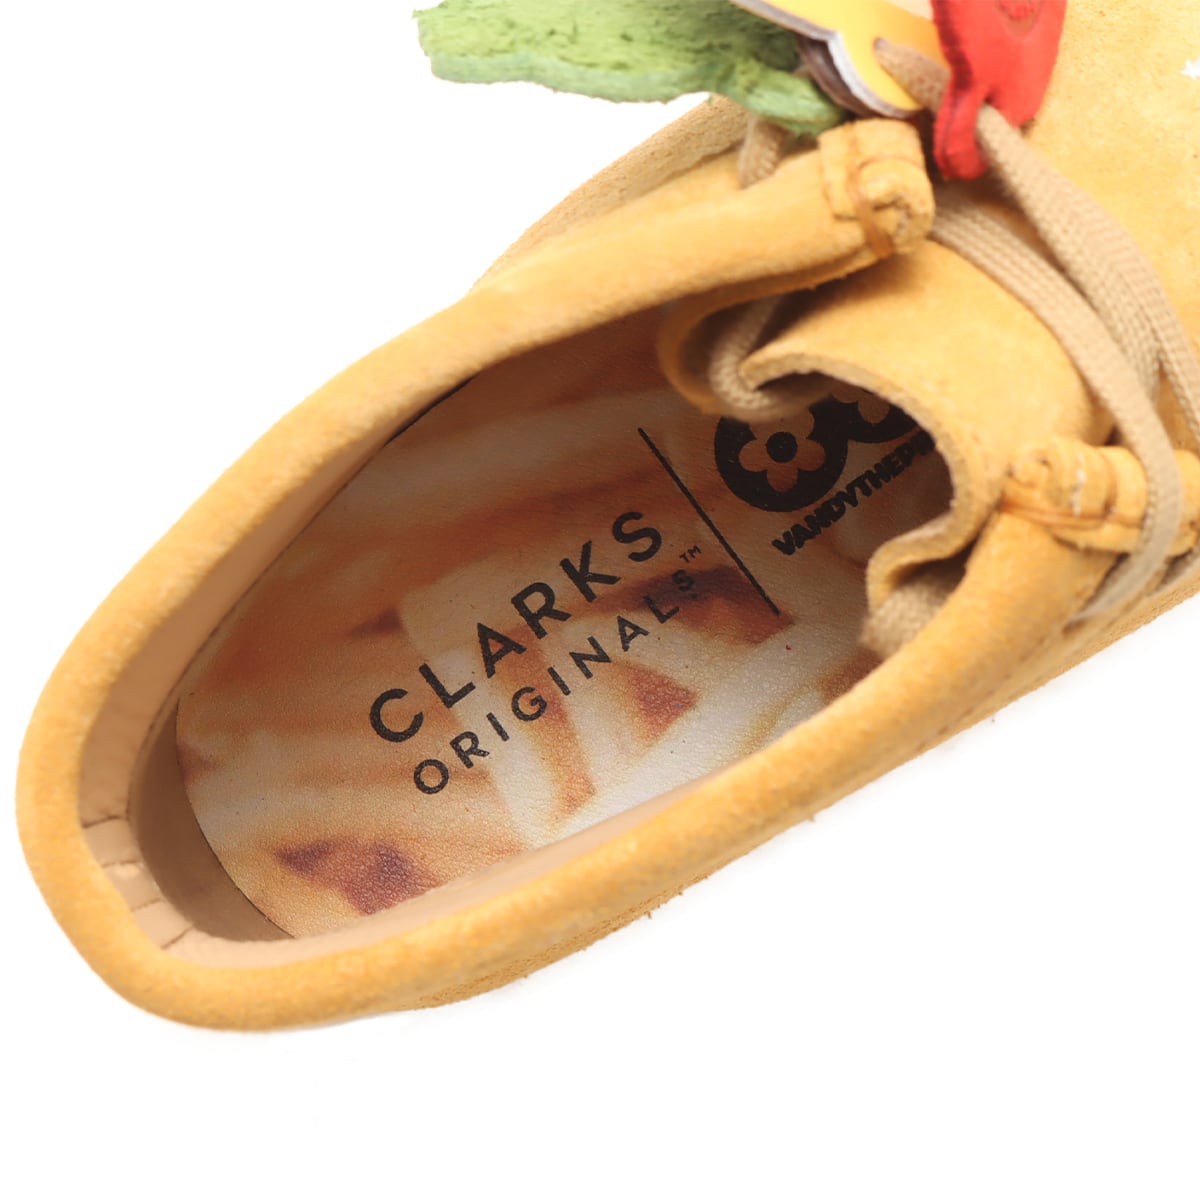 Clarks Wallabee Boot Tan Embroidery TAN 23FA-I